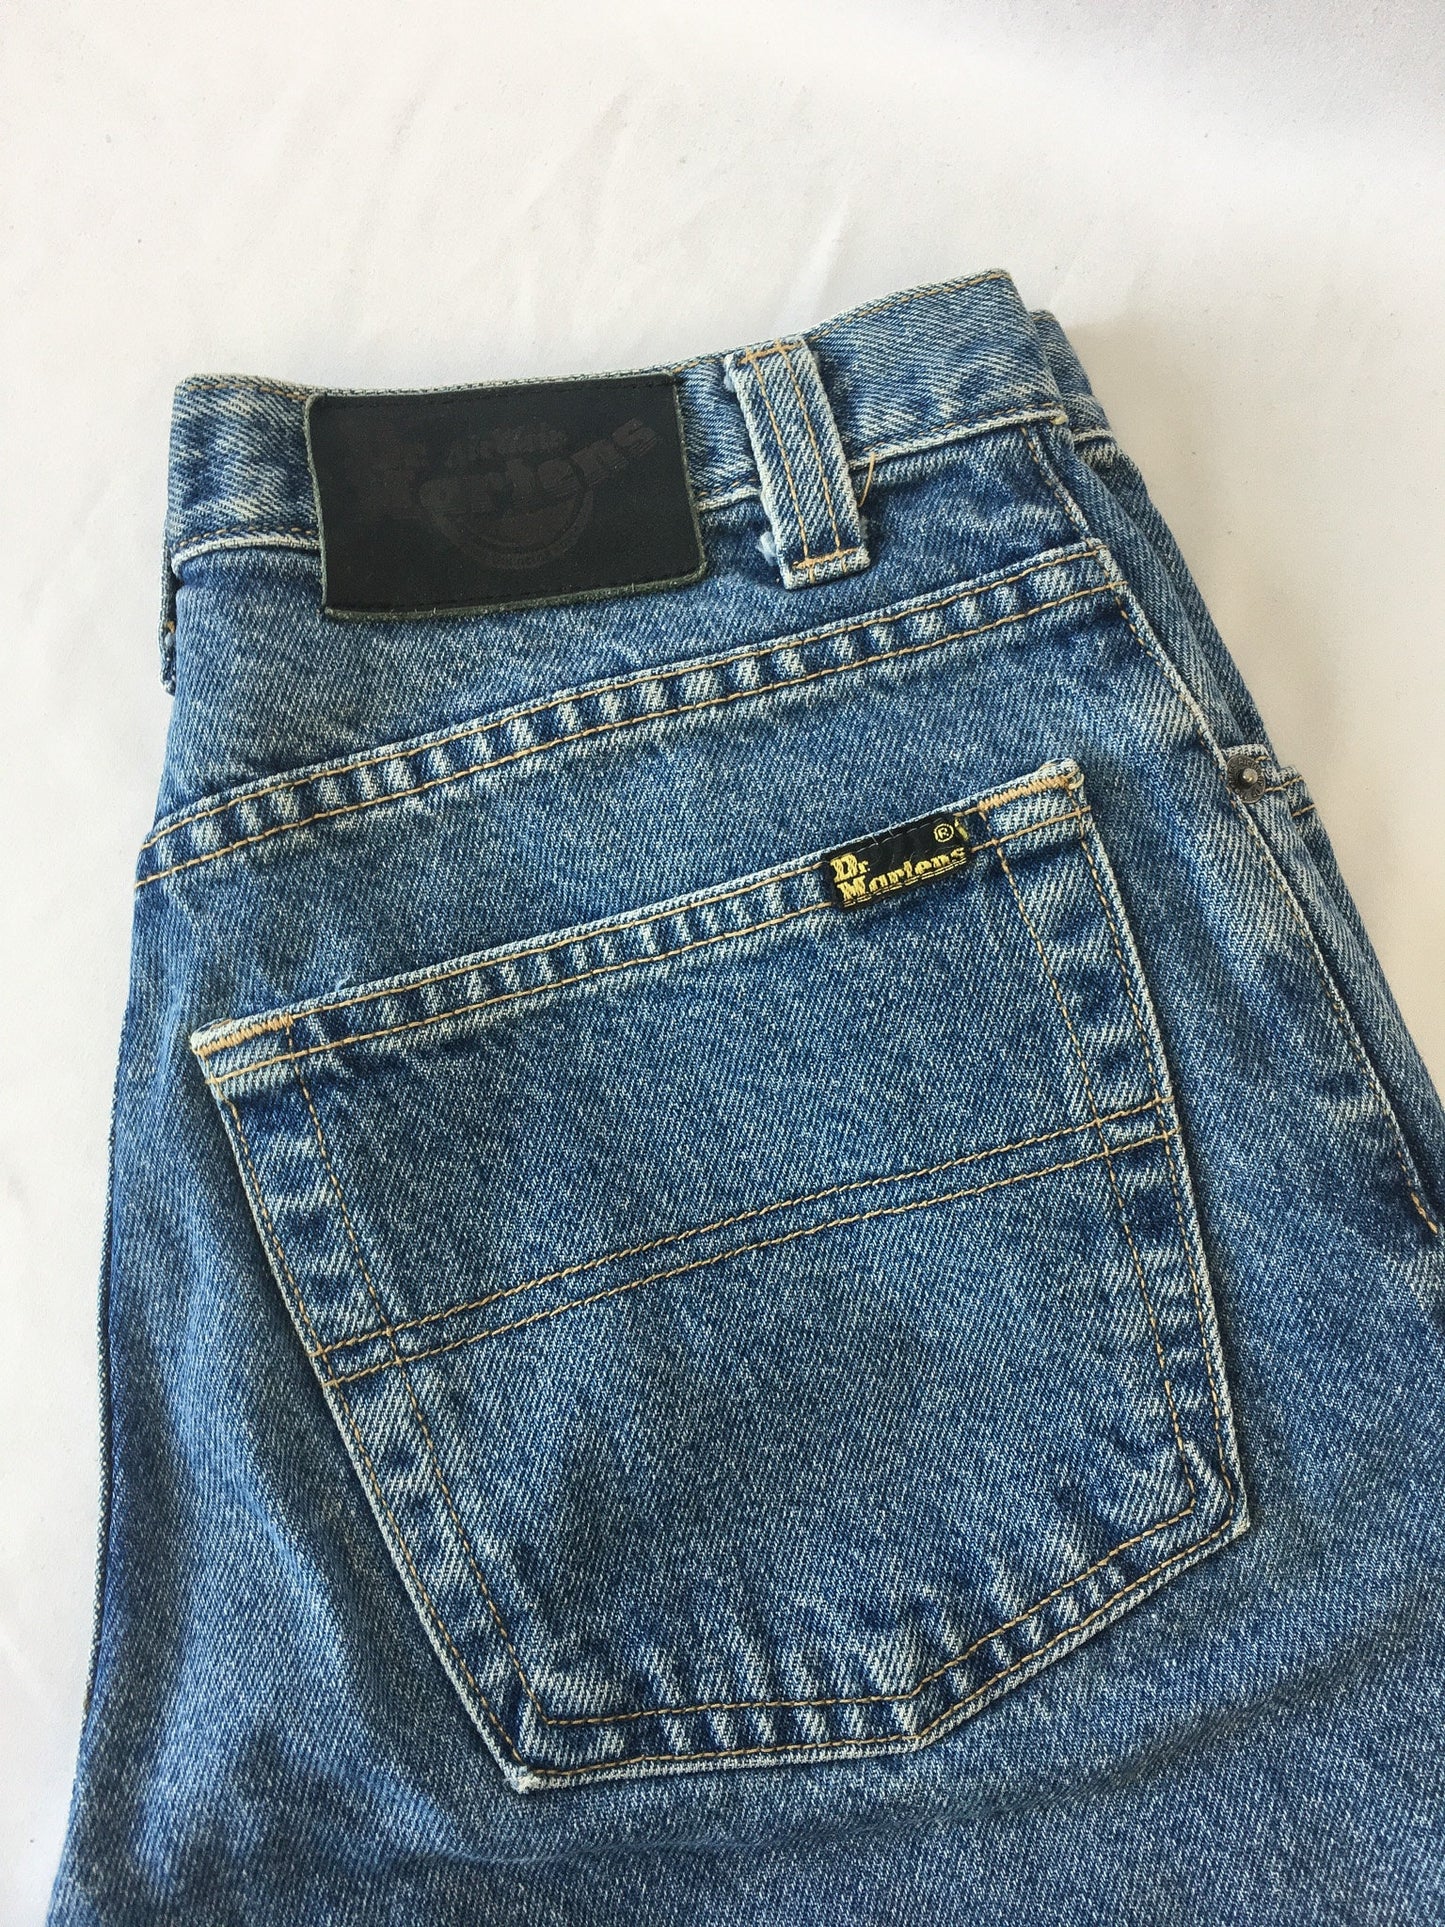 Vintage 90s Dr. Martens Air Wair Medium Wash Jeans, Sz. 30 x 32, (measures 29" x 30") Vintage 90s Denim